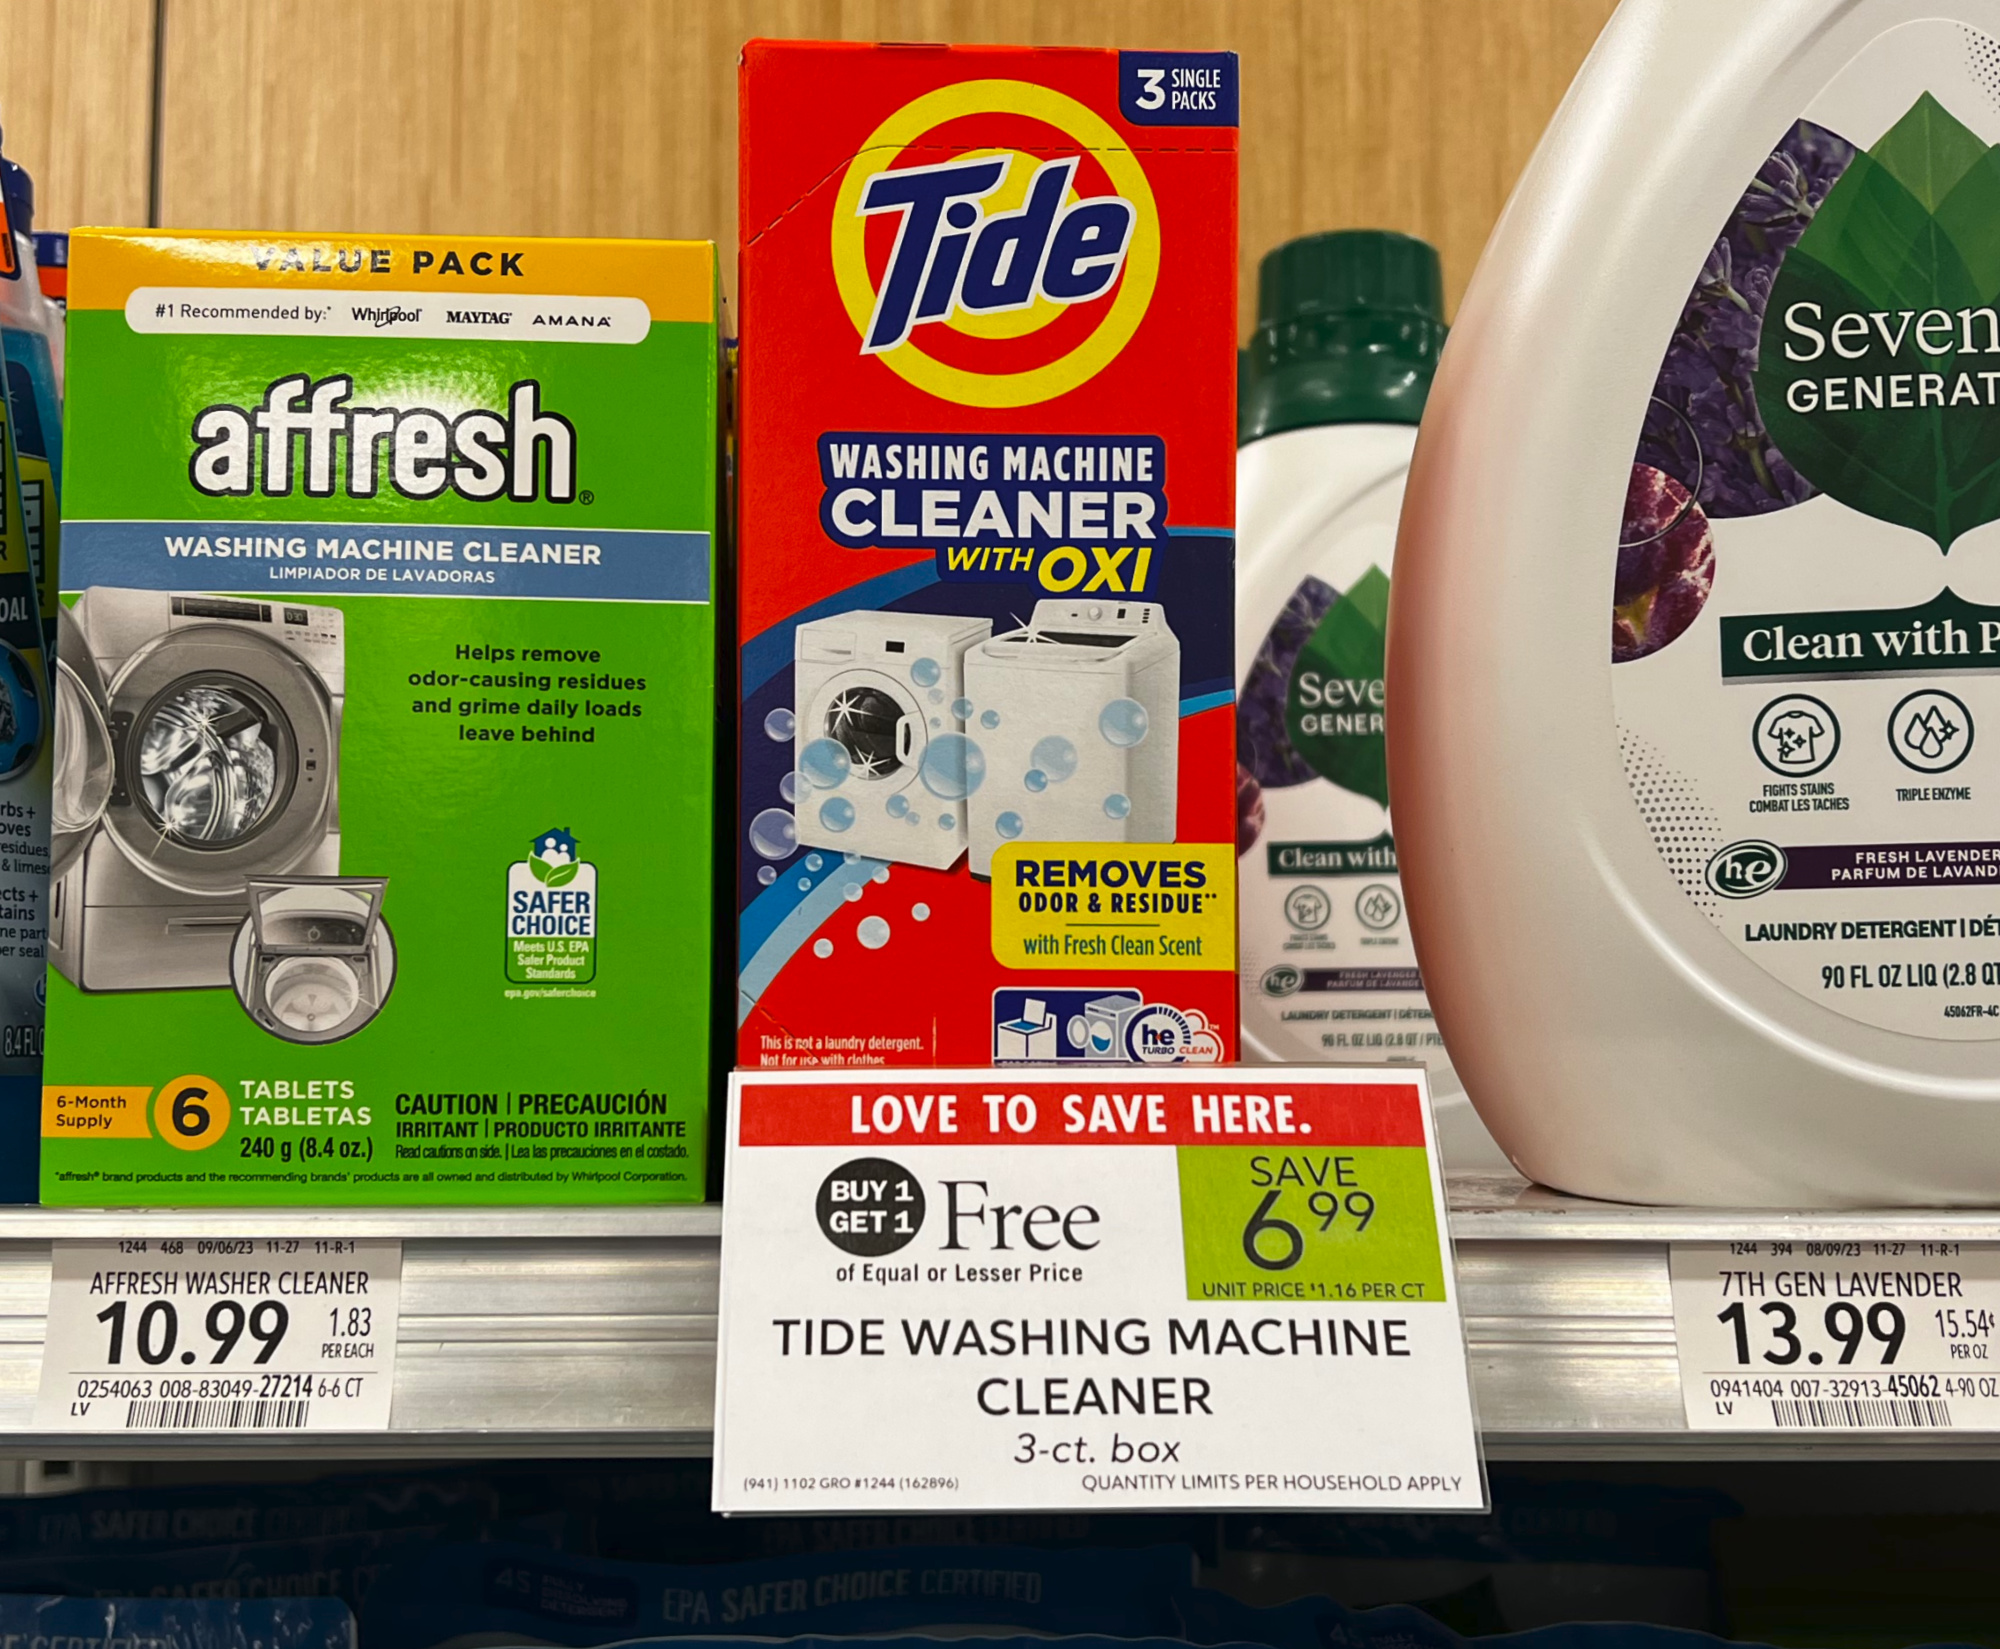 Tide Washing Machine Cleaner As Low As $5.99 At Kroger (Regular